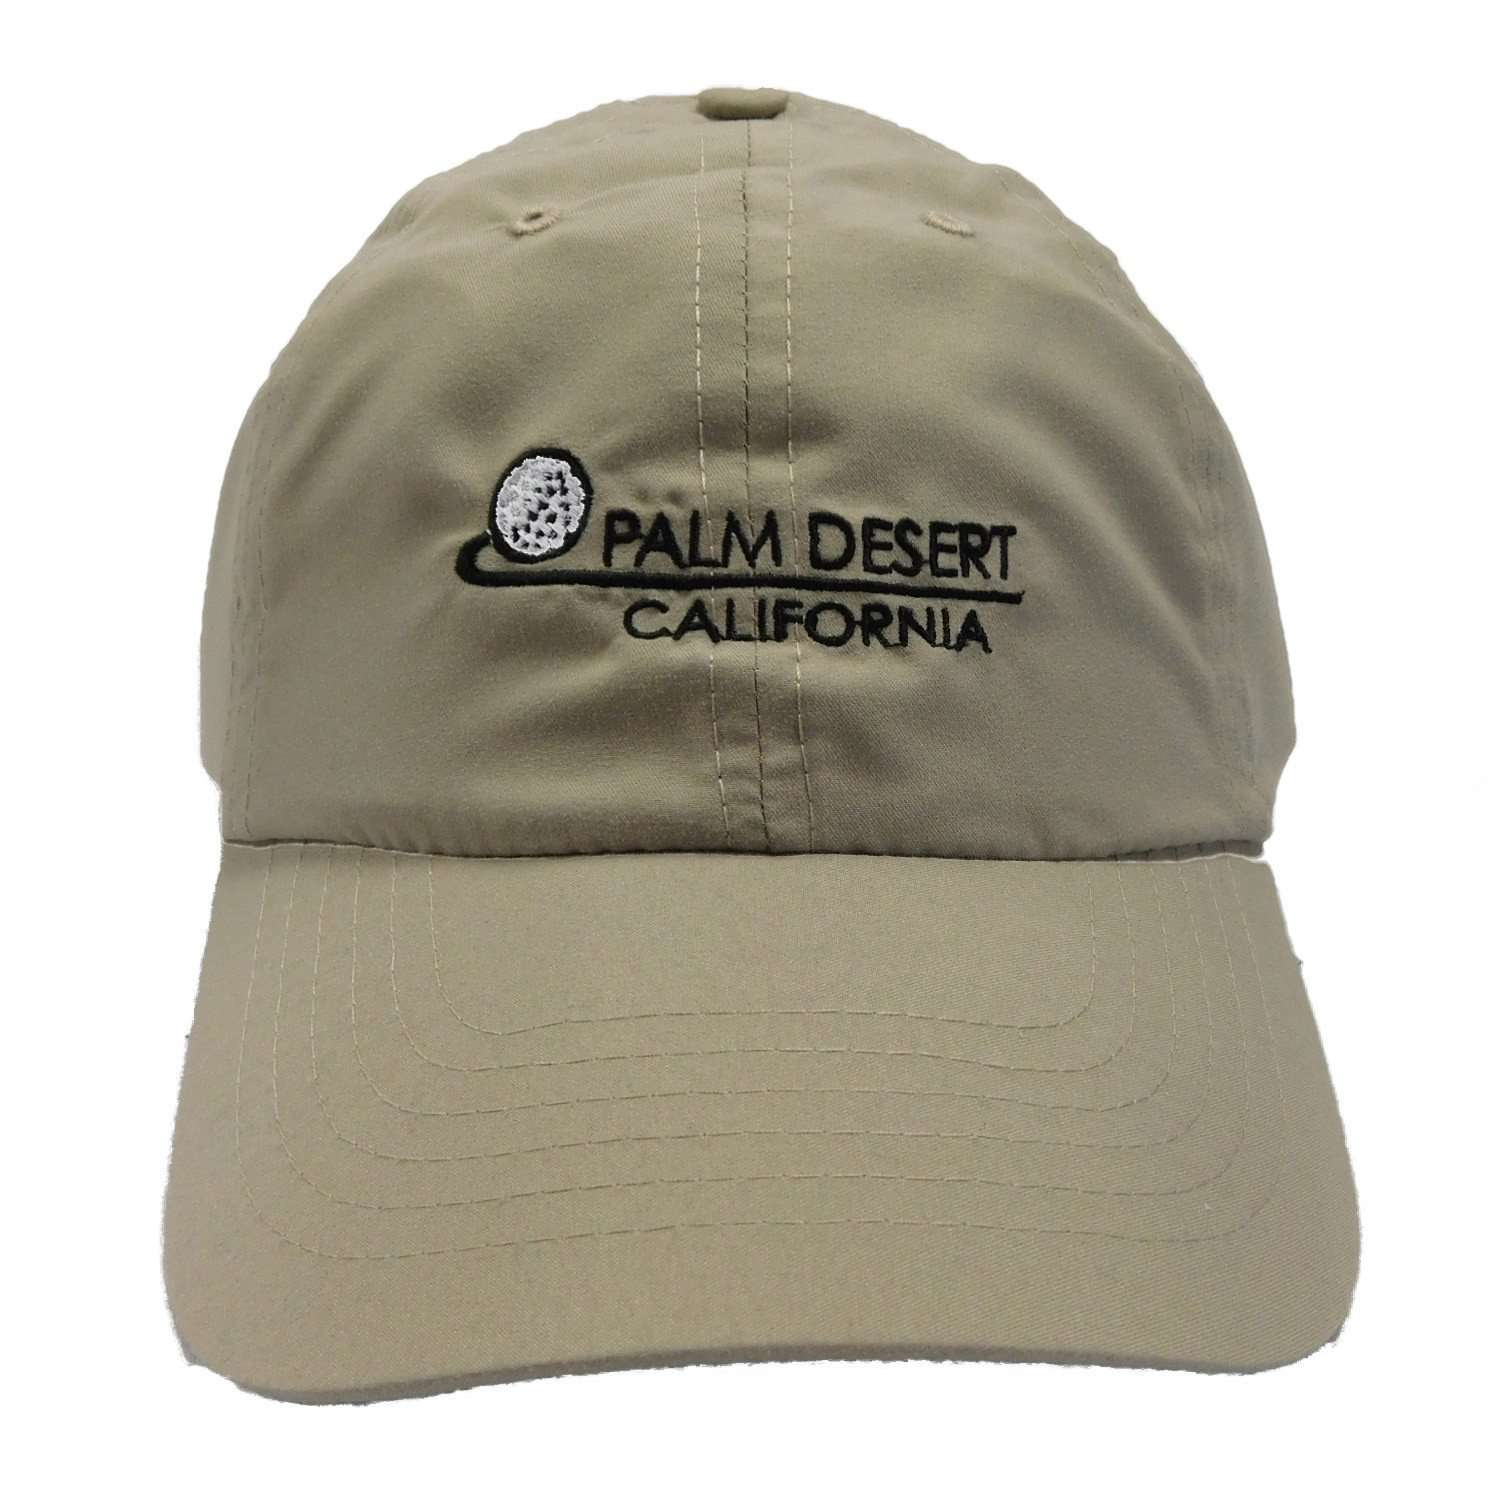 Tropical Trends Microfiber Baseball Cap - PALM DESRT Cap Dorfman Hat Co. C0002TN Tan  